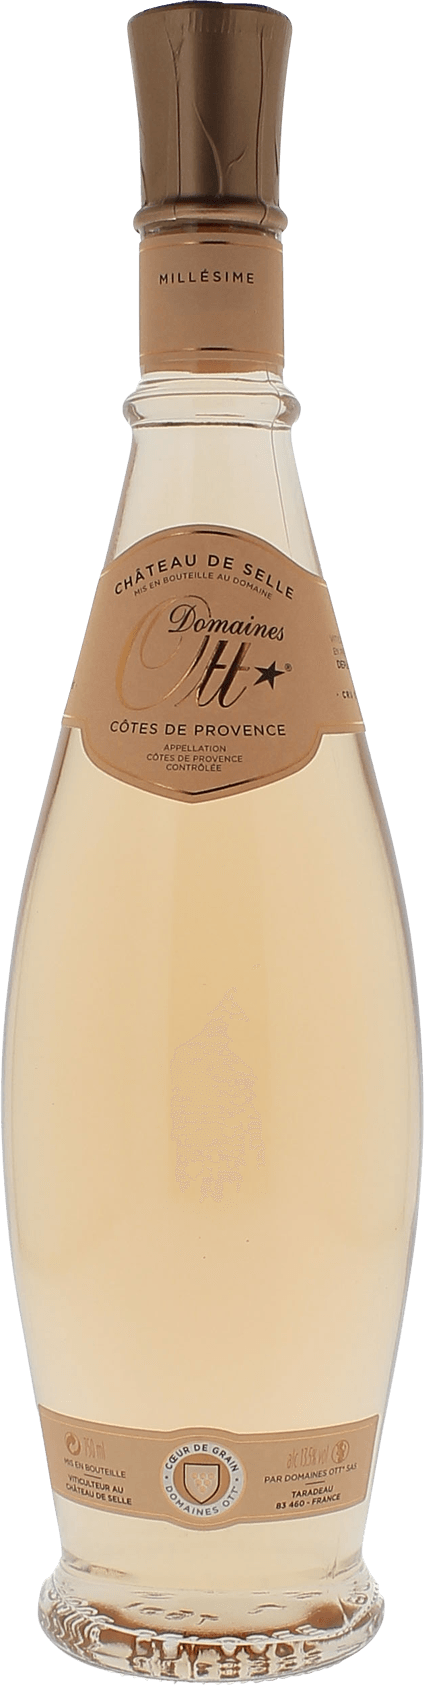 Domaine ott chteau de selle 2018  Cotes de Provence, Slection Provence ros